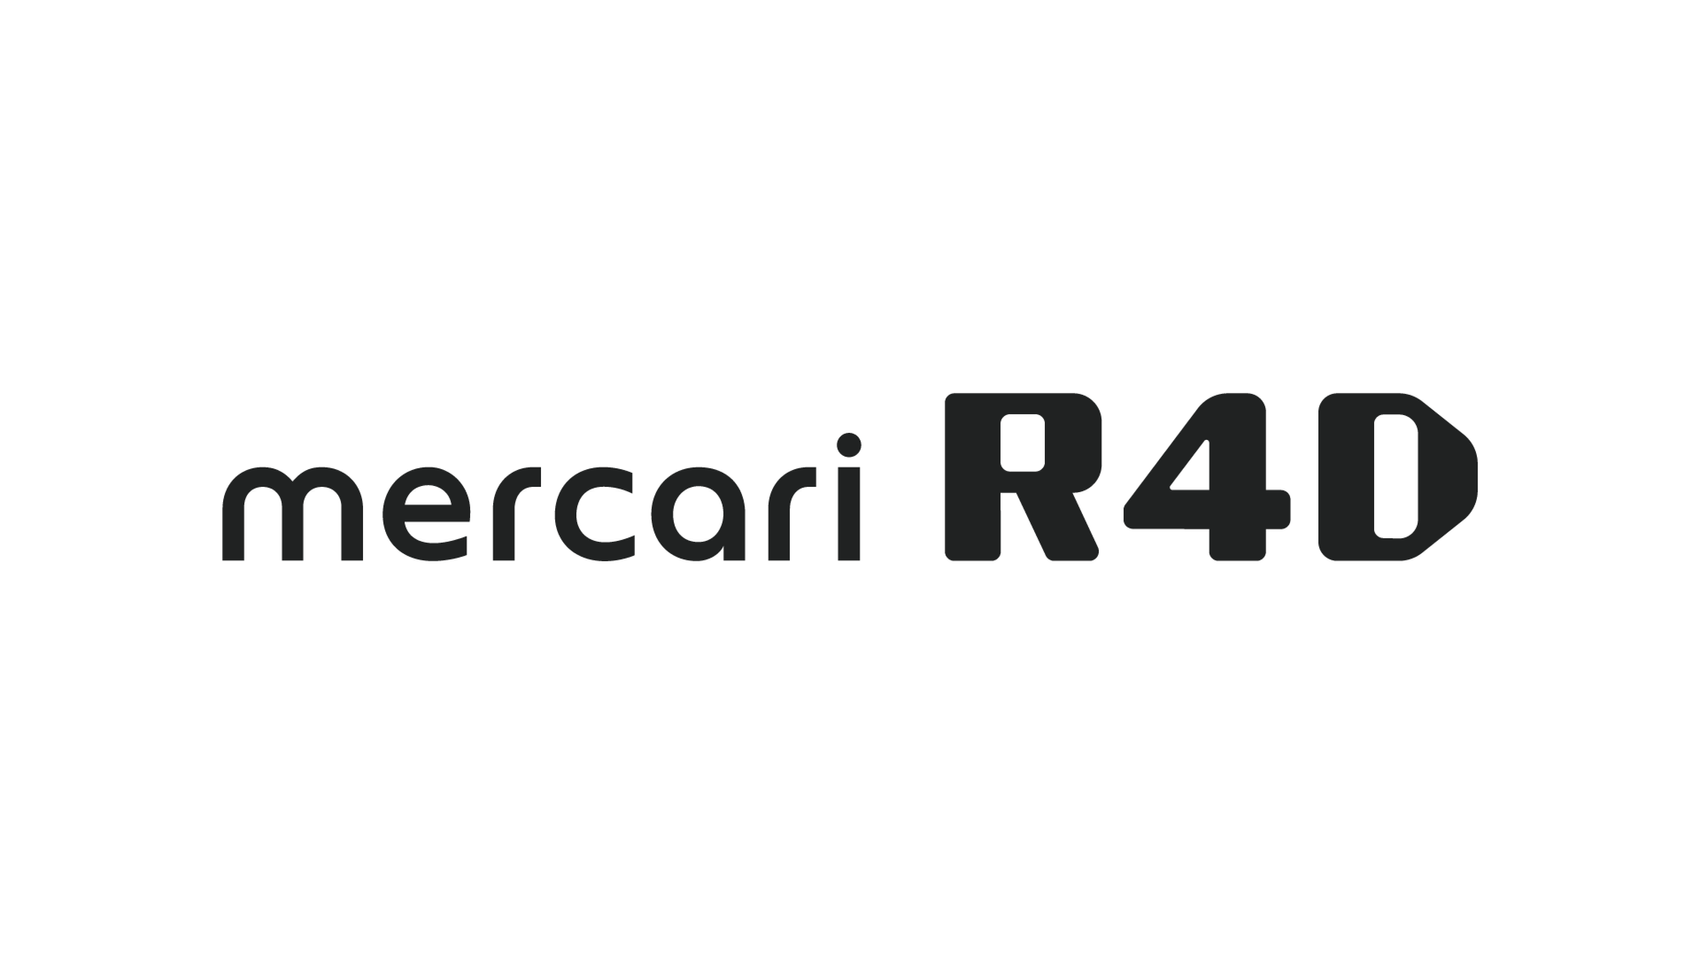 Mercari R4D HCI、JavaScriptum 7.0 & Kyrgyzstan BA Communityのイベントに参加